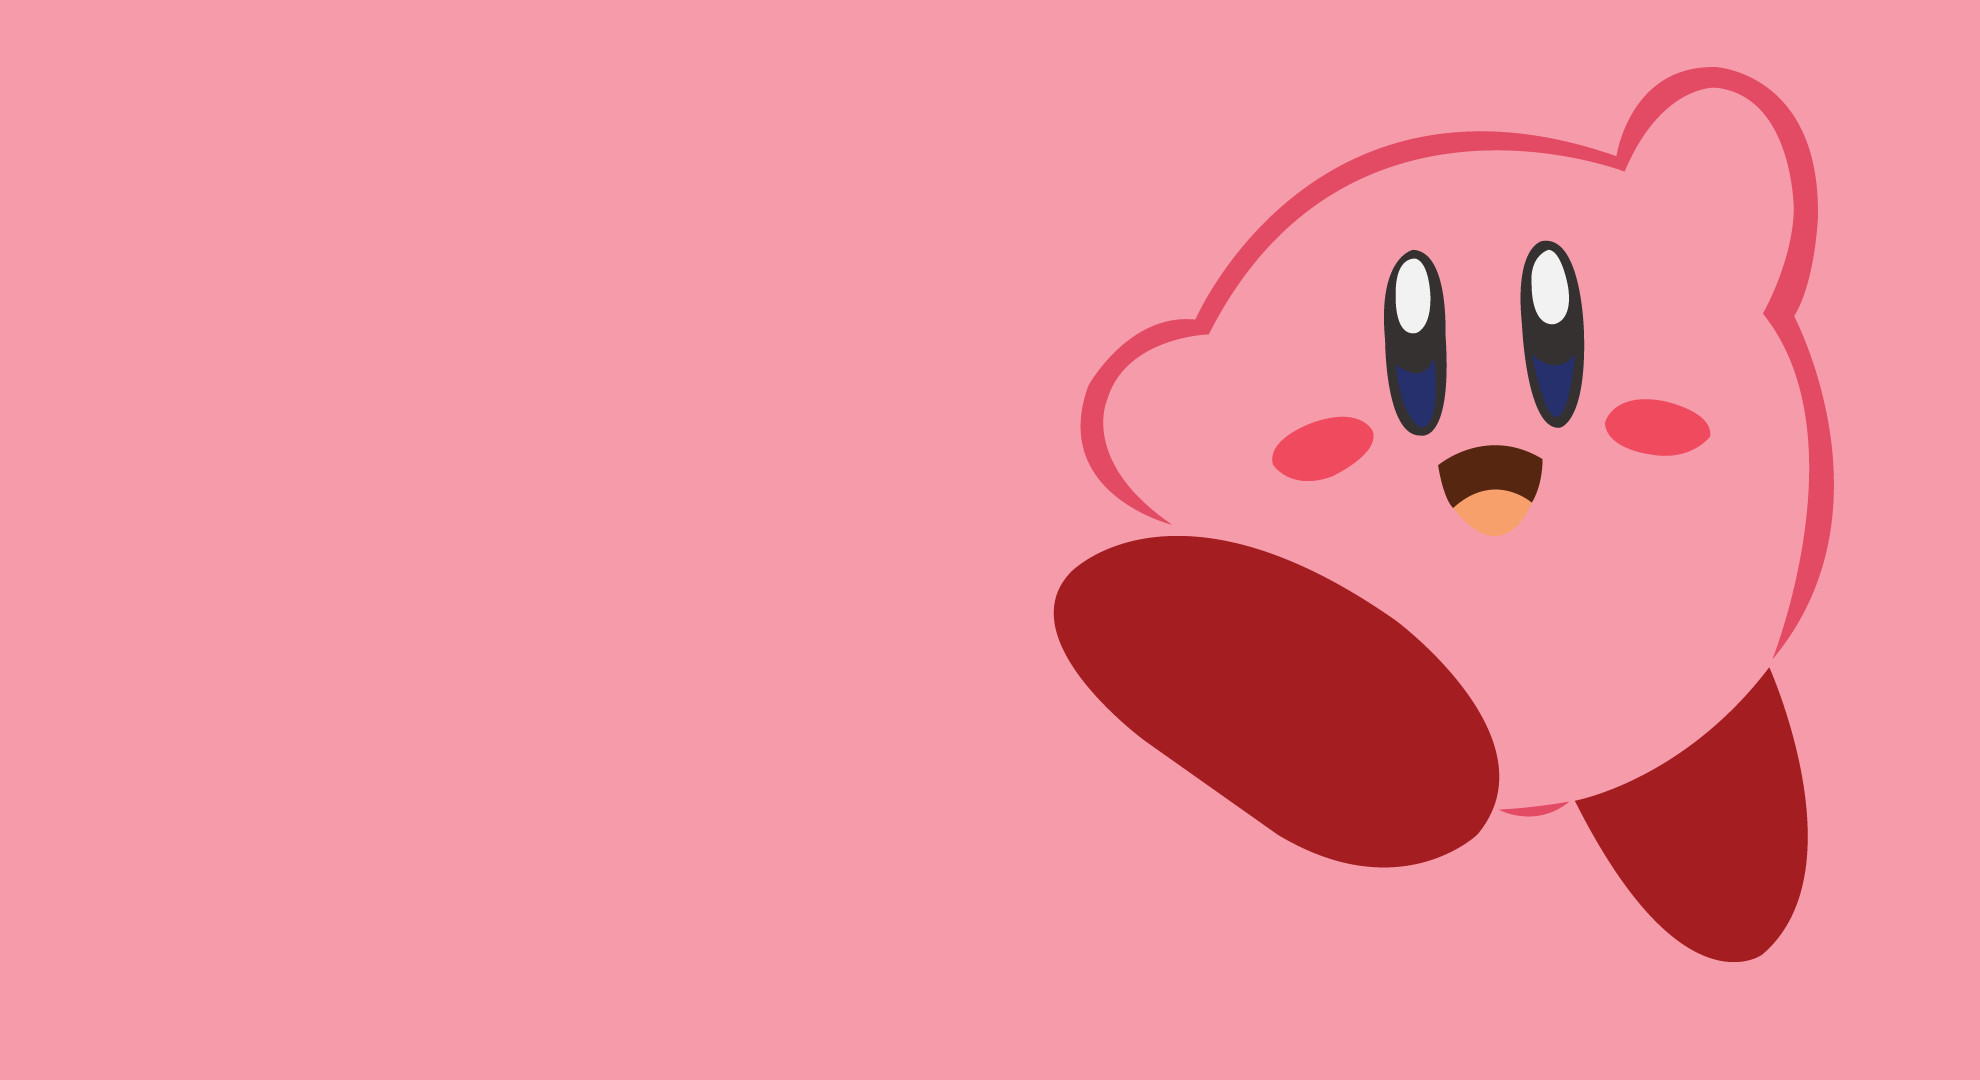 Khám phá những hình nền Kirby vui nhộn mới nhất 2016 và tận hưởng niềm vui đích thực. Với sự độc đáo và hài hước, chúng sẽ giúp bạn tăng tính sáng tạo và mang lại cảm hứng cho cuộc sống hàng ngày.